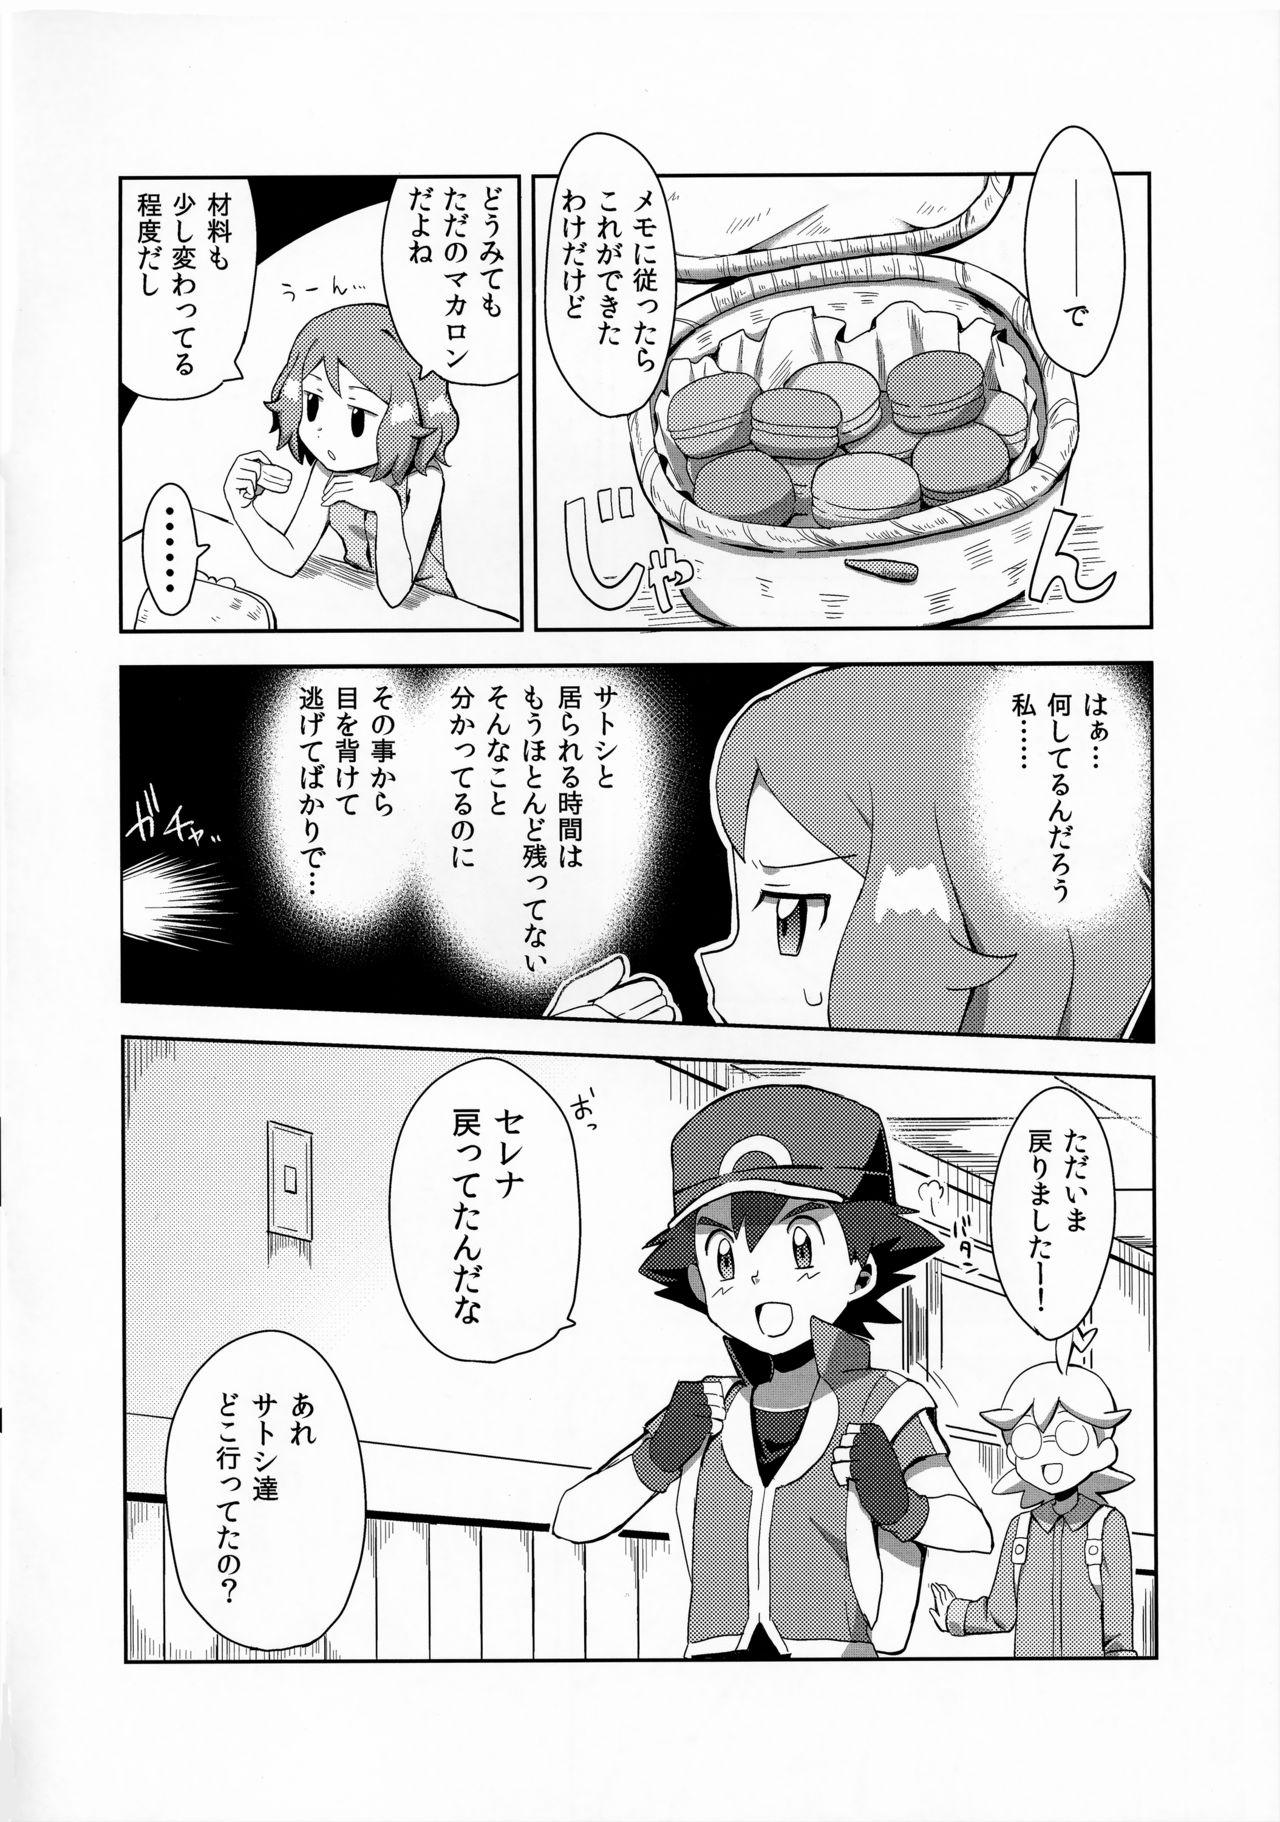 Rub Macaron no Oaji wa!? - Pokemon Transex - Page 5